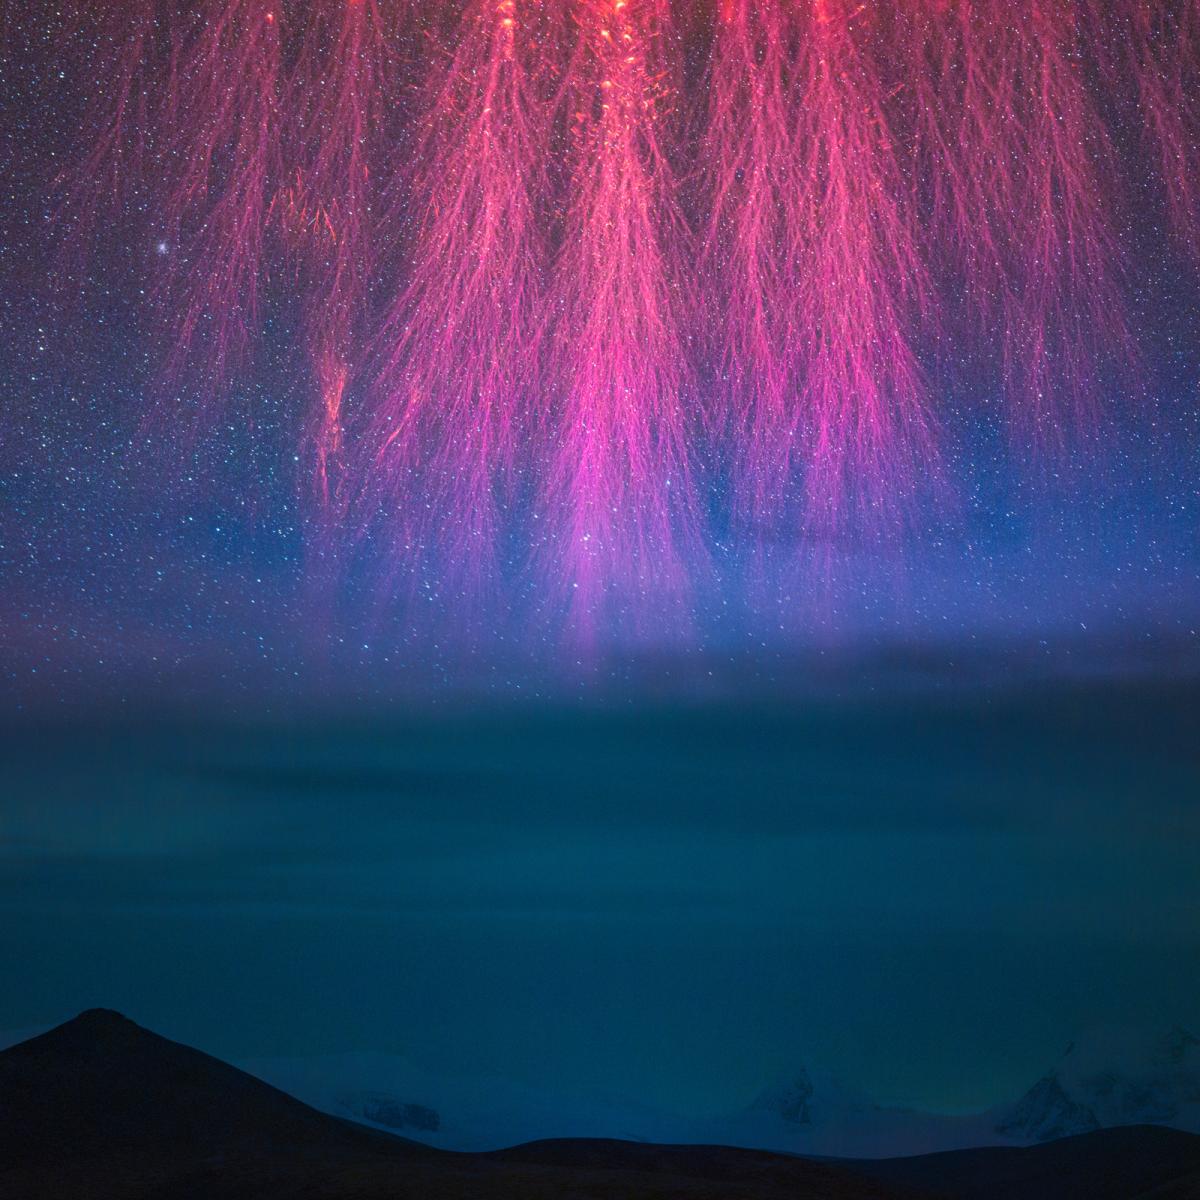 Immagine spaziale con fuochi d'artificio rosa su sfondo blu con stelle